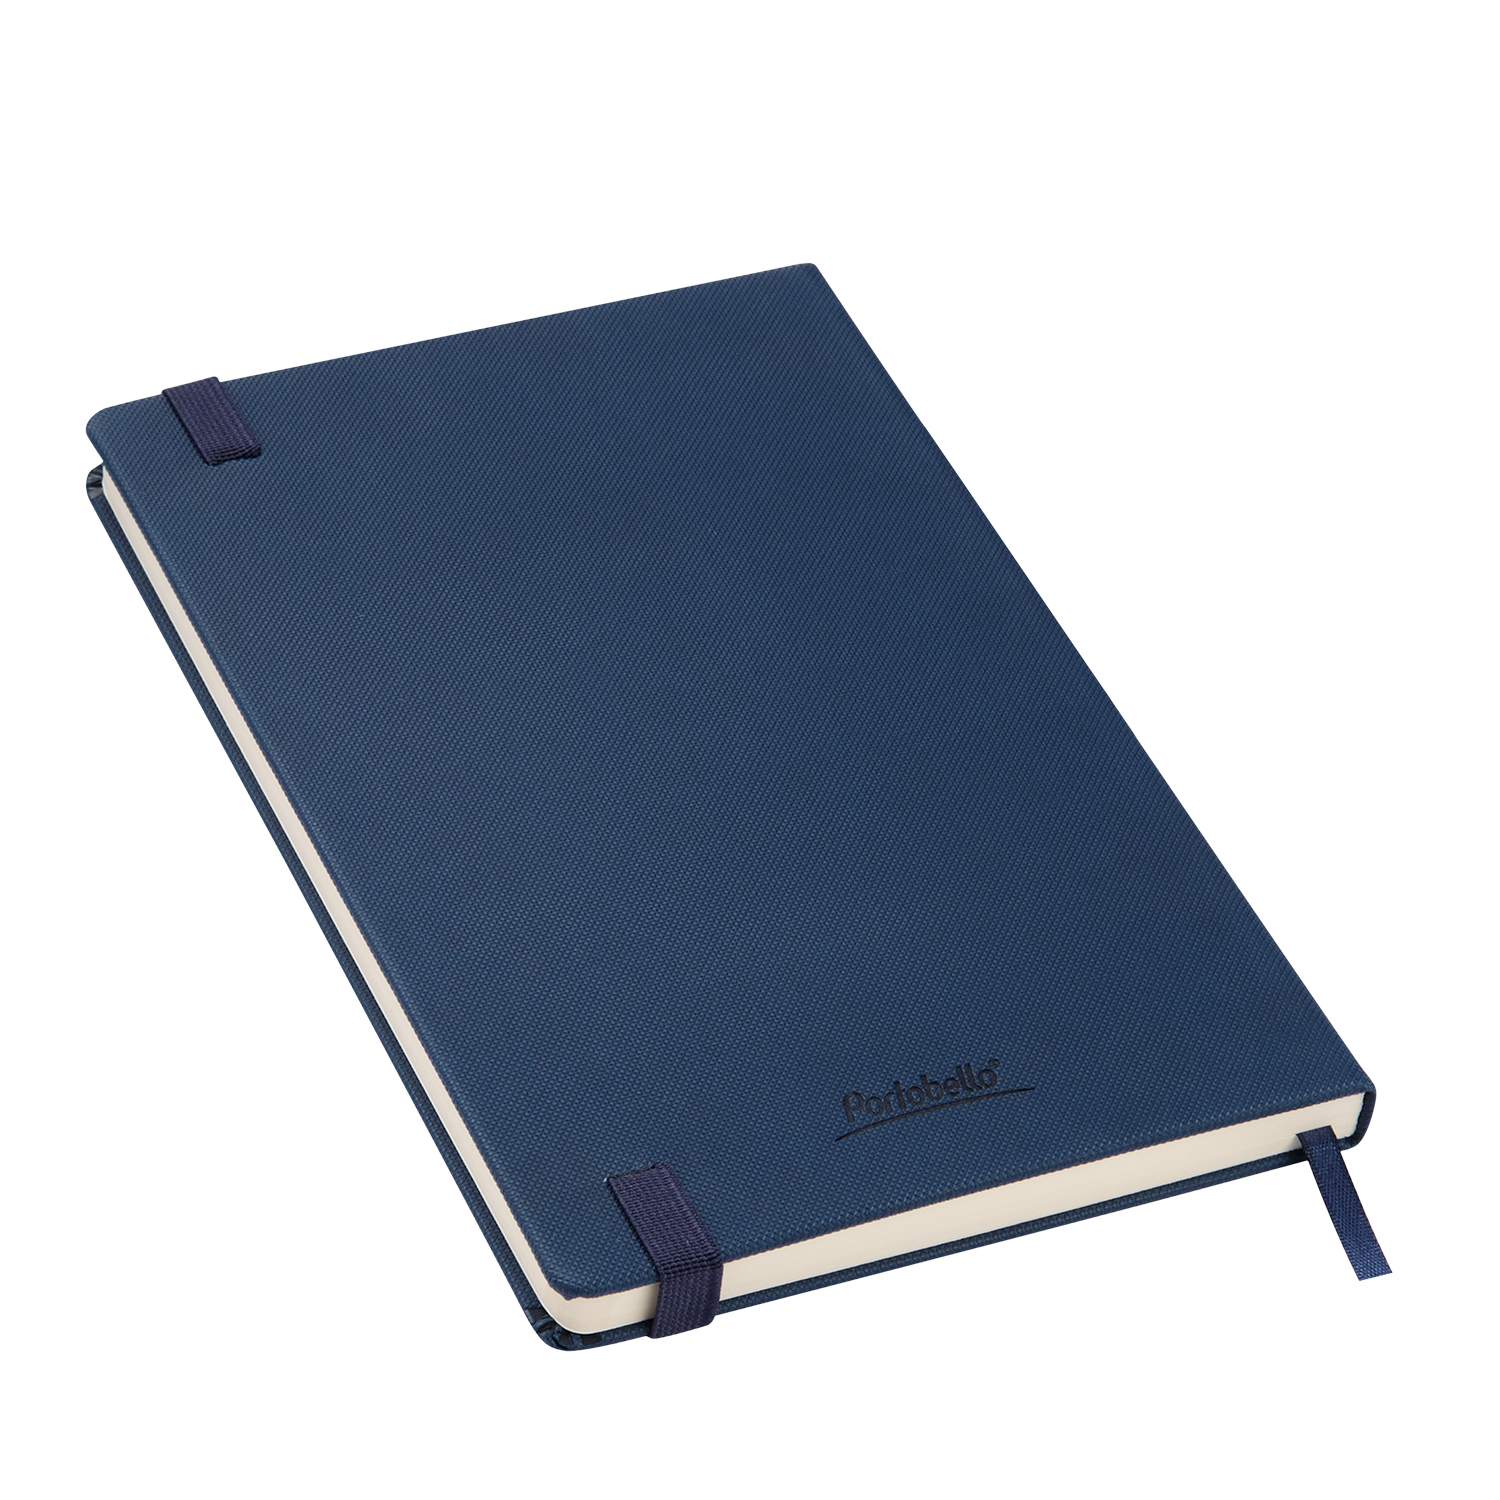 Ежедневник недатированный Canyon Btobook, синий (без упаковки, без стикера)